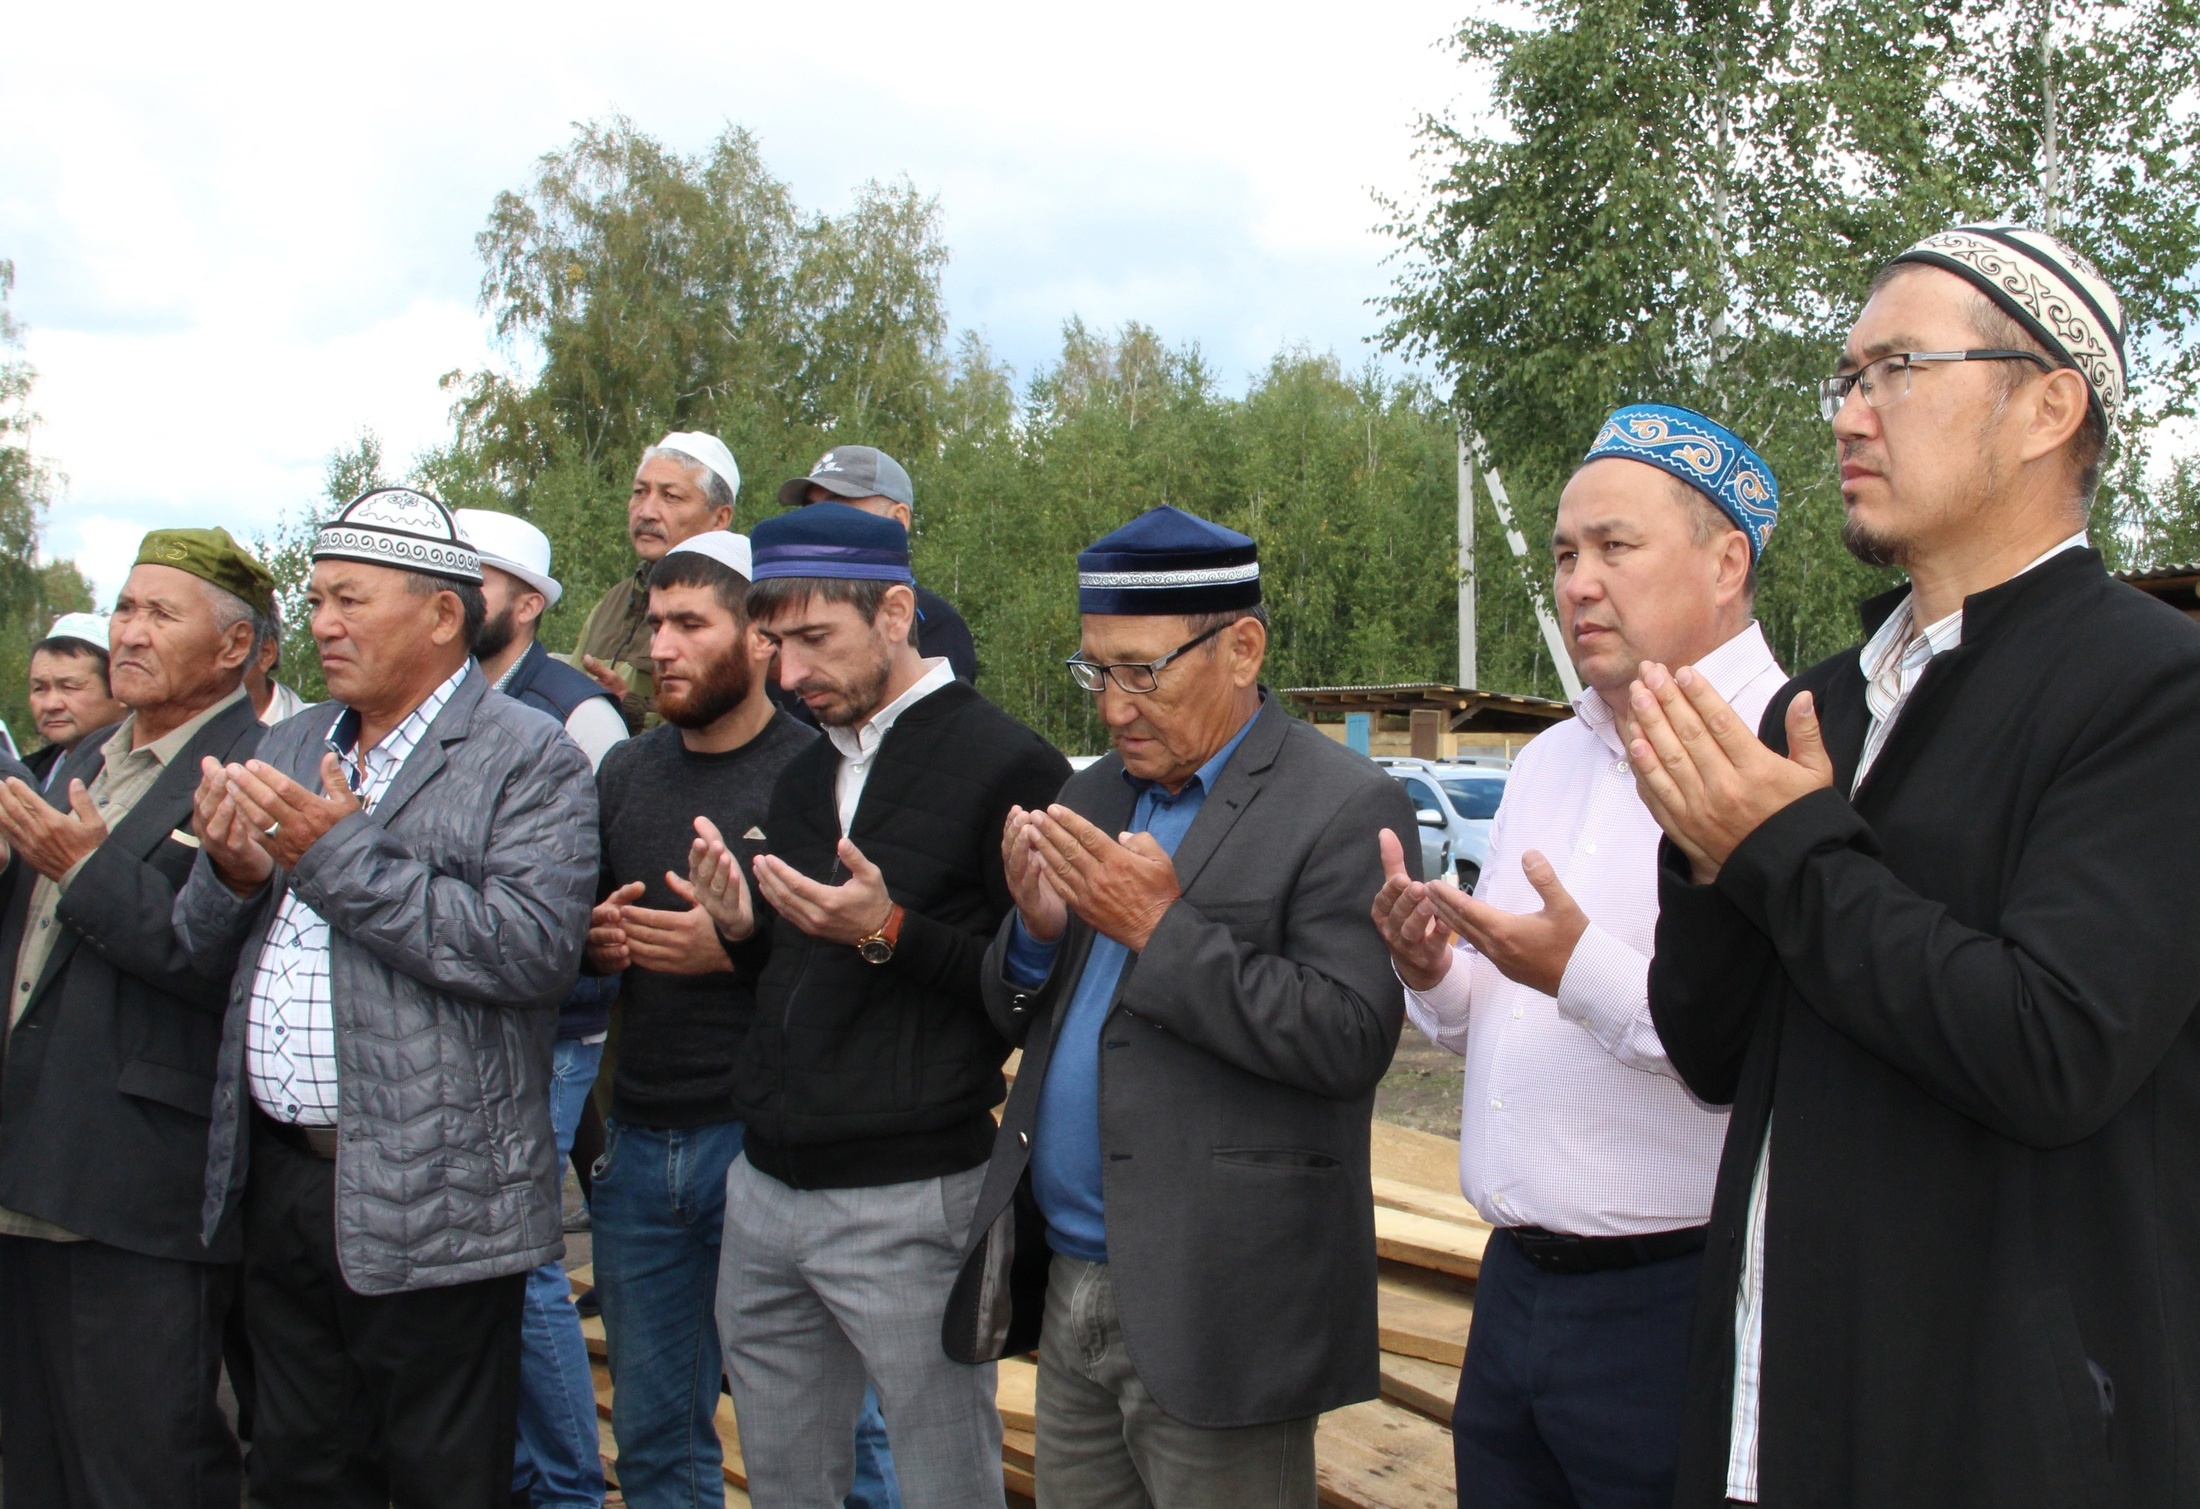 Община под руководством Назарбаева построит мечеть в Зауралье